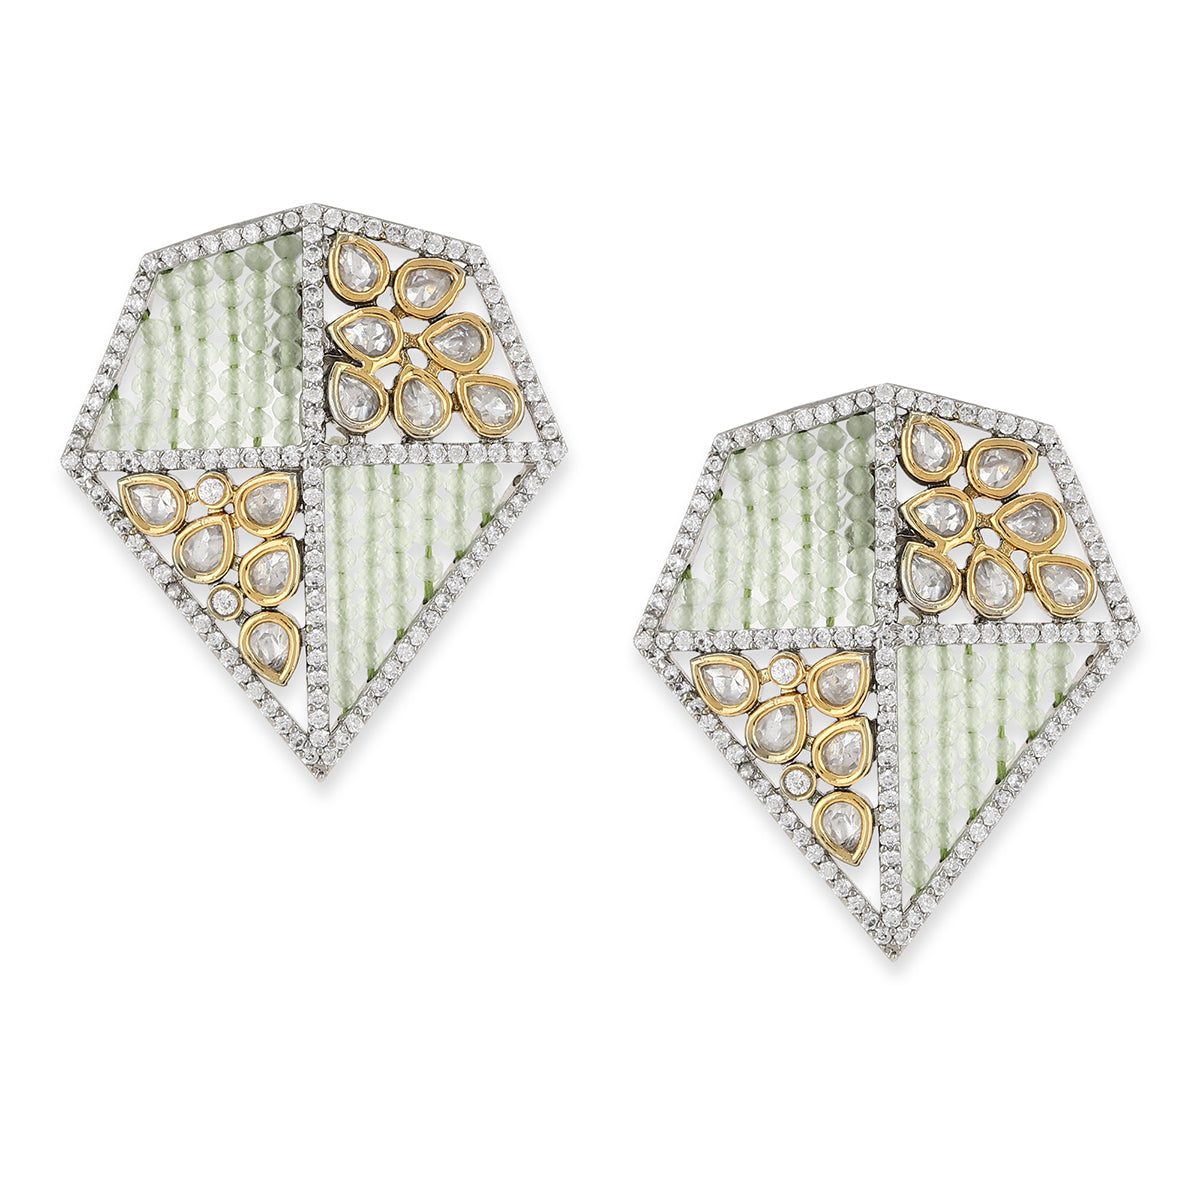 Green & Silver-Toned Geometric Studs Earrings